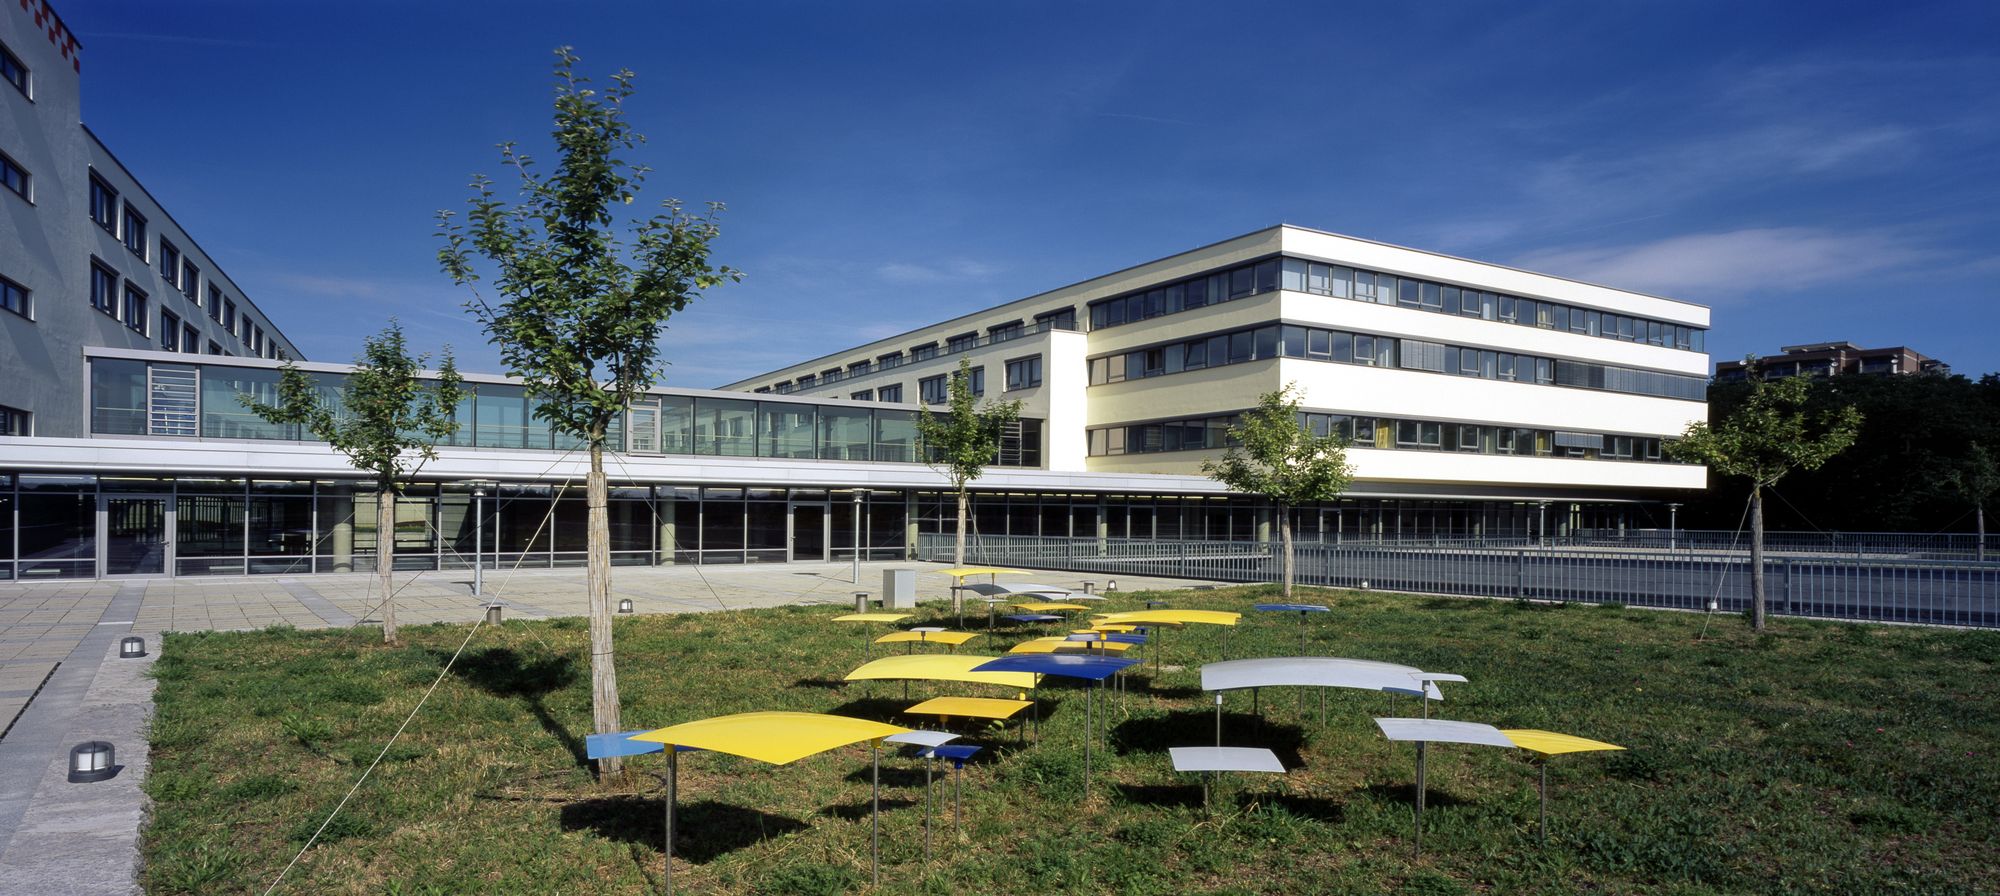 Gebäudeansicht des Zentrums für Innere Medizin des Universitätsklinikums Würzburg